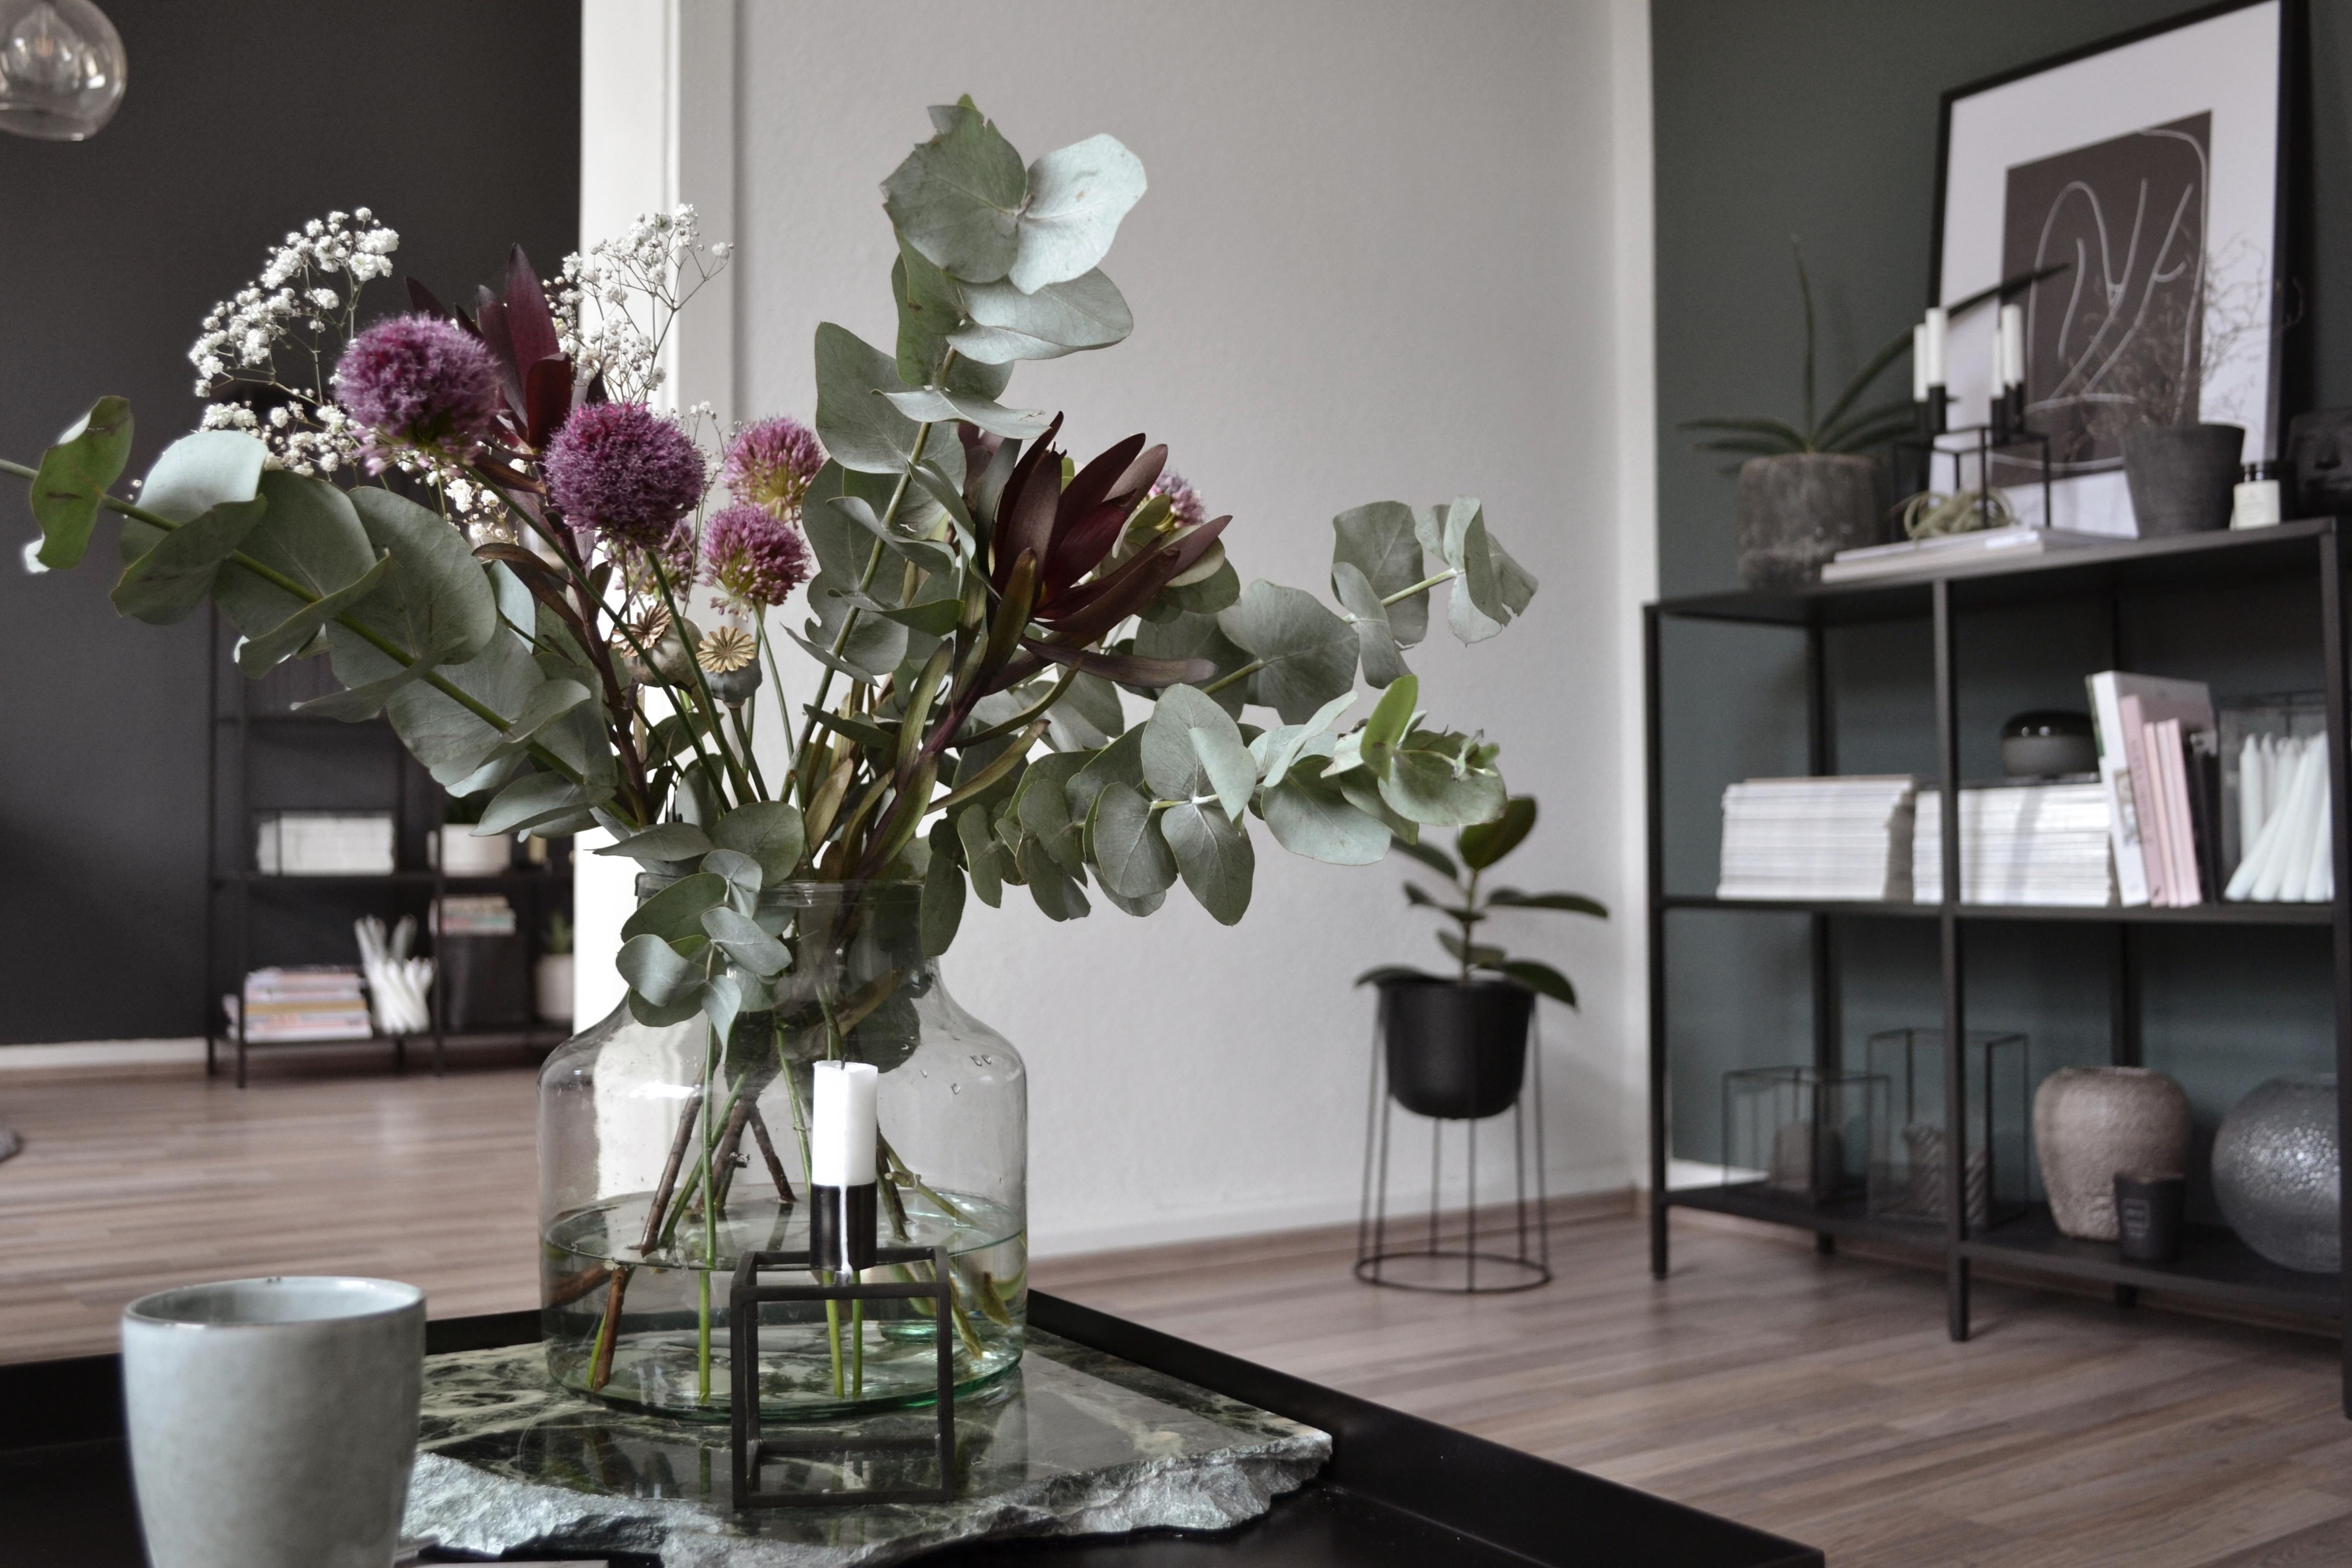 happy sunday! #flowerlove #wildbouquet #interiordecoration #interiordesign #couchstyle #livingroom #freshflowers